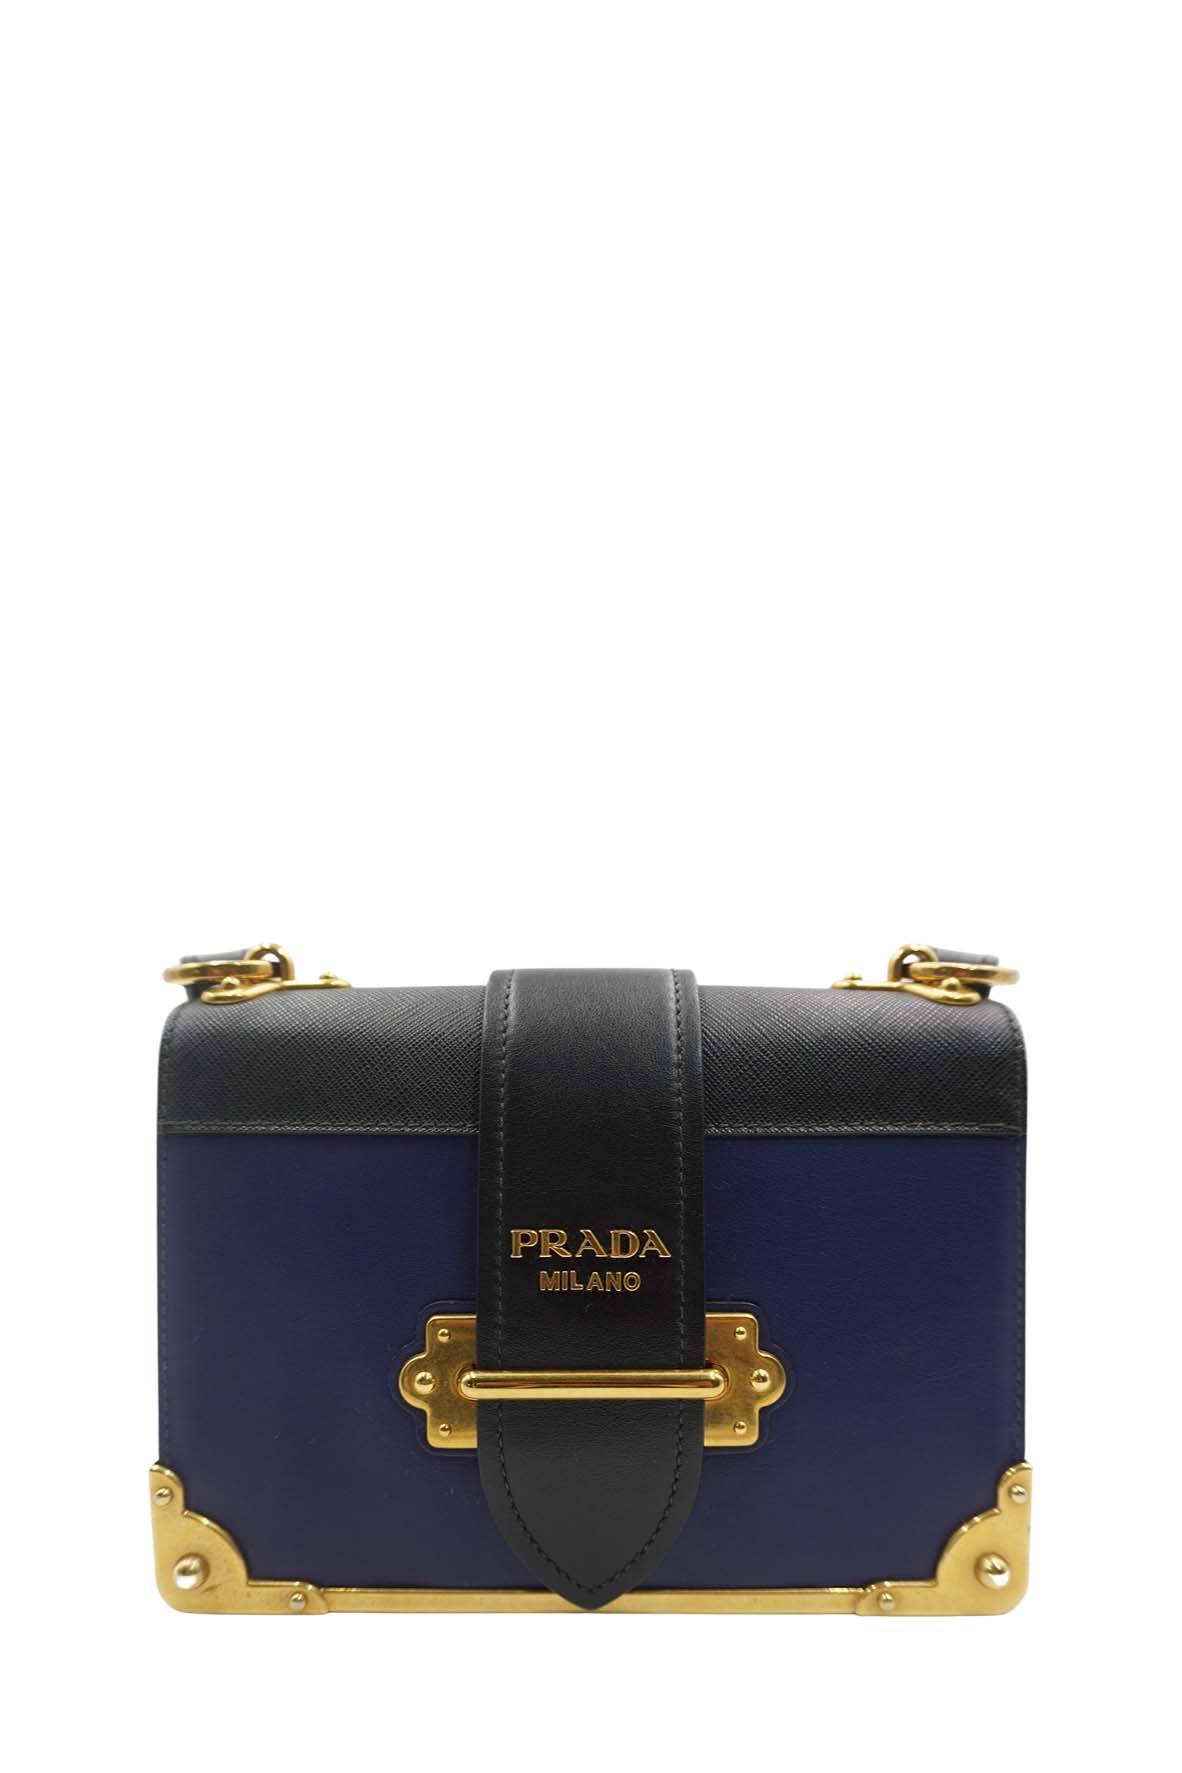 Prada City Calf Saffiano Cahier Bag Geranio Black Shoulder Bag With Studs -  A World Of Goods For You, LLC